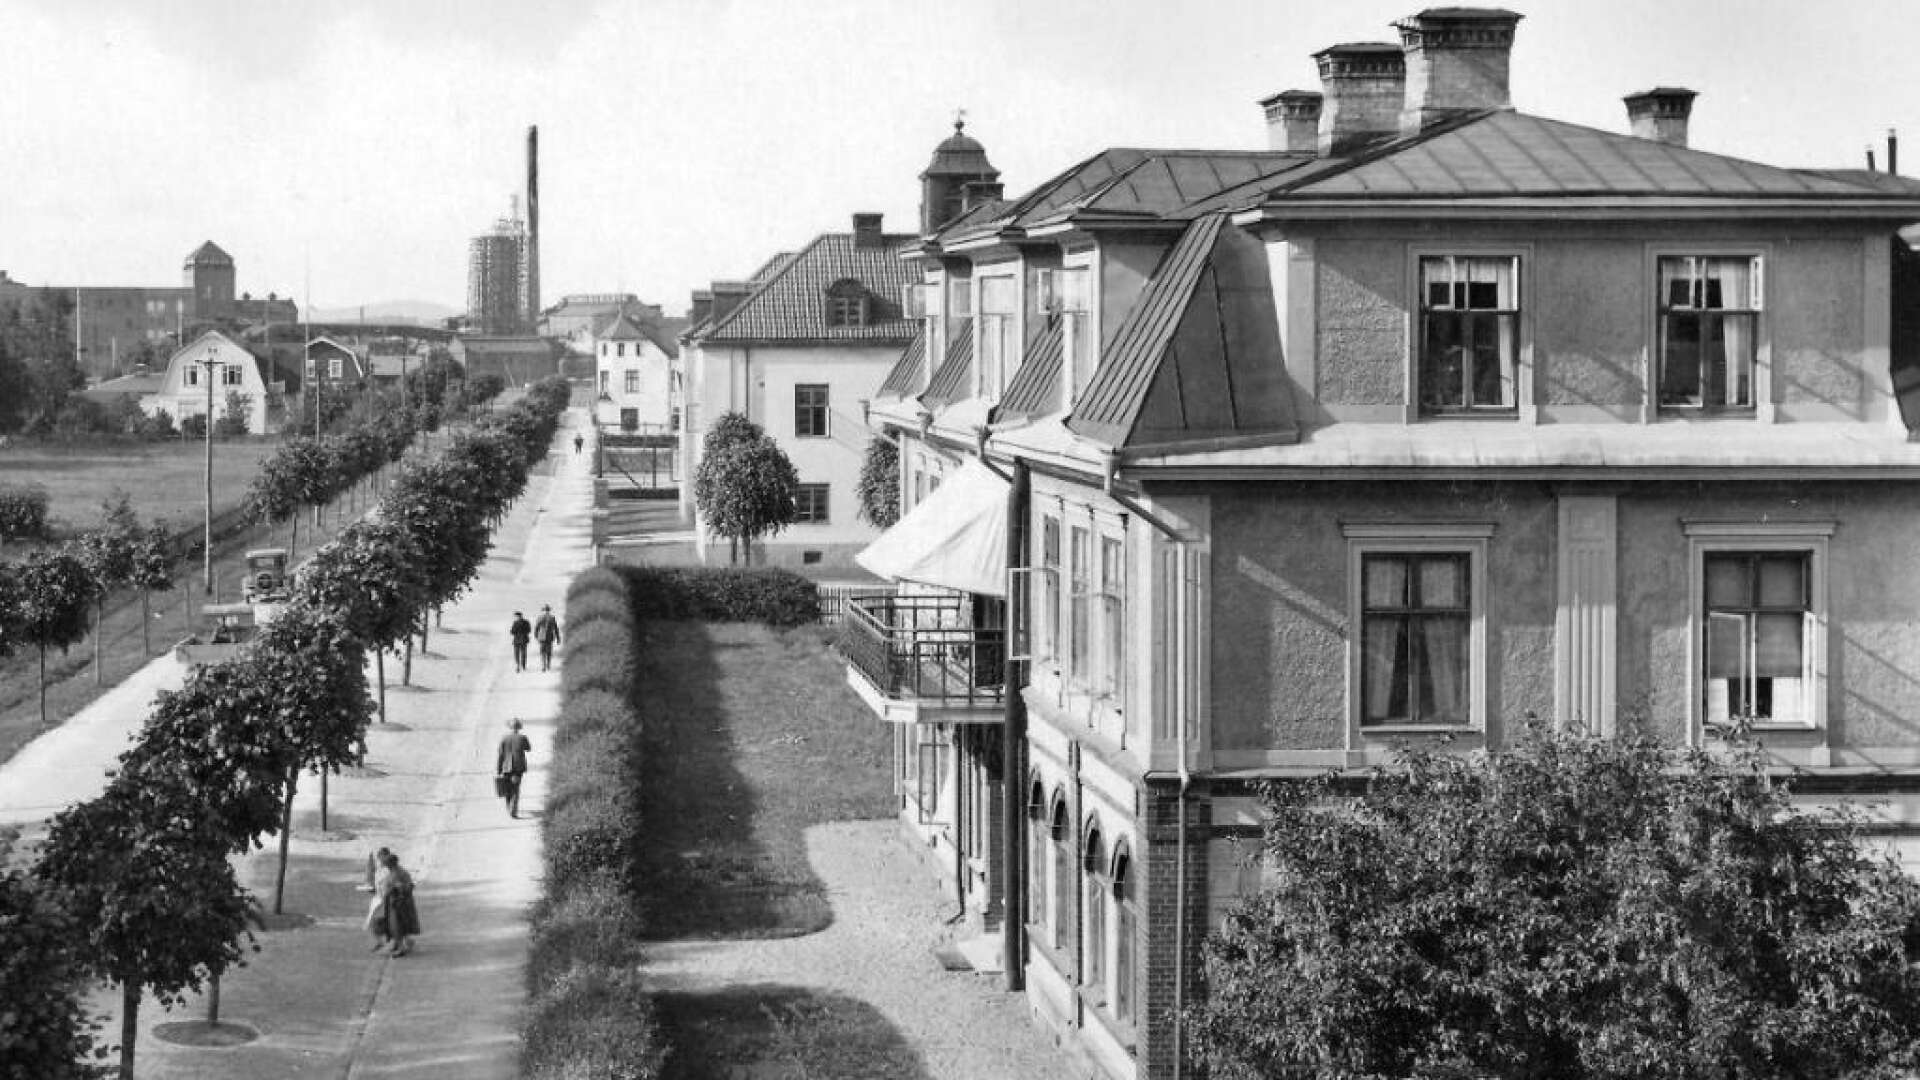 På 1930-talet öppnade Gillberga Pastorats Sparbank i Bäärnhielmshuset. Verksamheten pågick där i drygt två decennier. En omfattande förskingring blev slutet för banken. Bäärnhielmshuset ägdes under en stor del av 1900-talet av Billeruds AB, som där också hade flera olika förvaltningar.